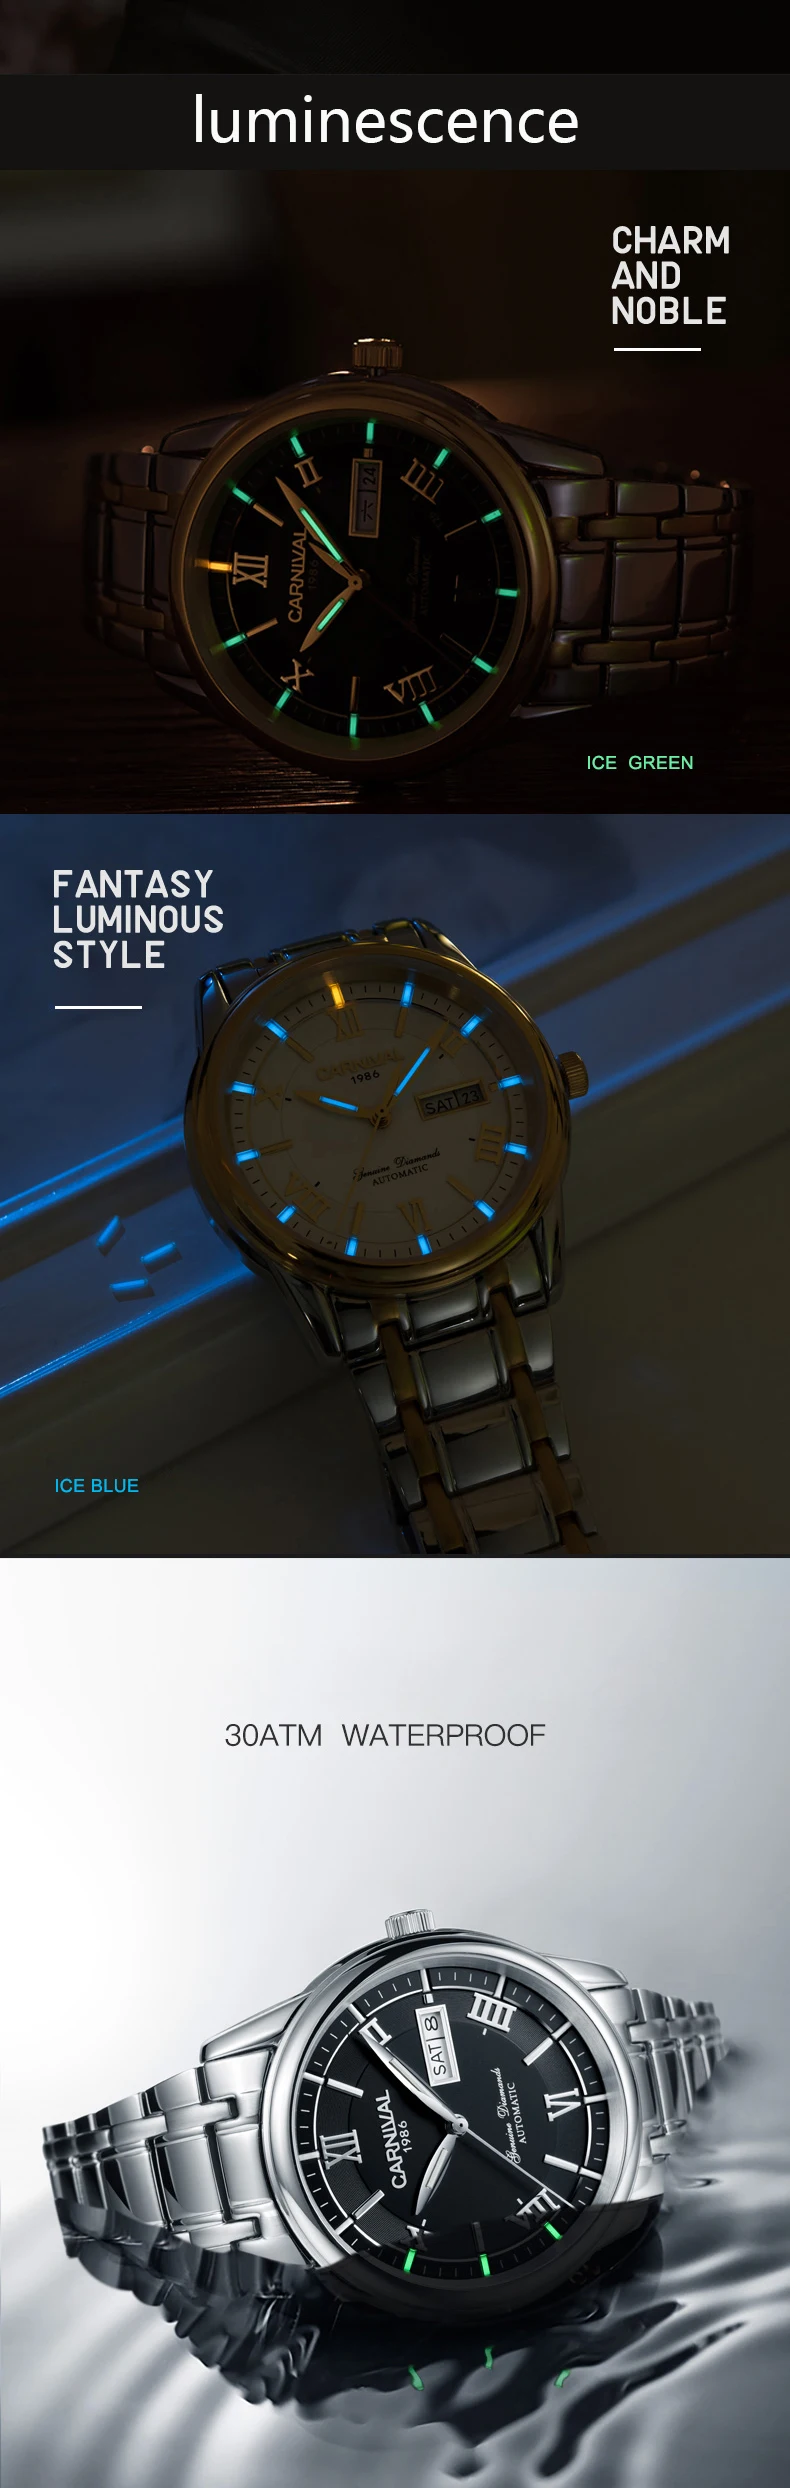 Военный Тритий T25 светящиеся часы Мужские люксовый бренд Авто механические часы полностью стальные водонепроницаемые часы uhren montre сапфир